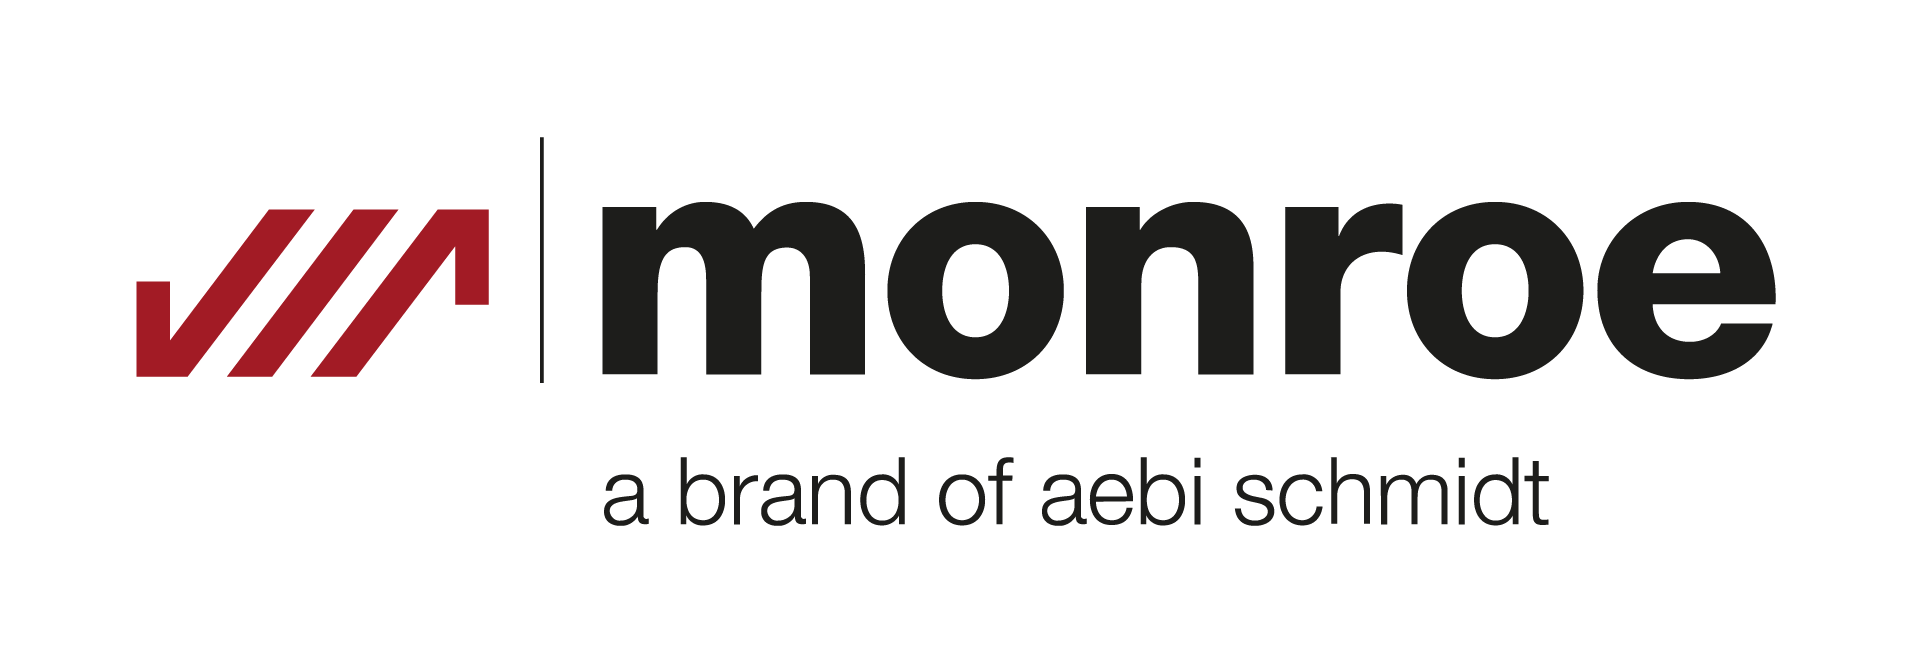 Monroe Logo